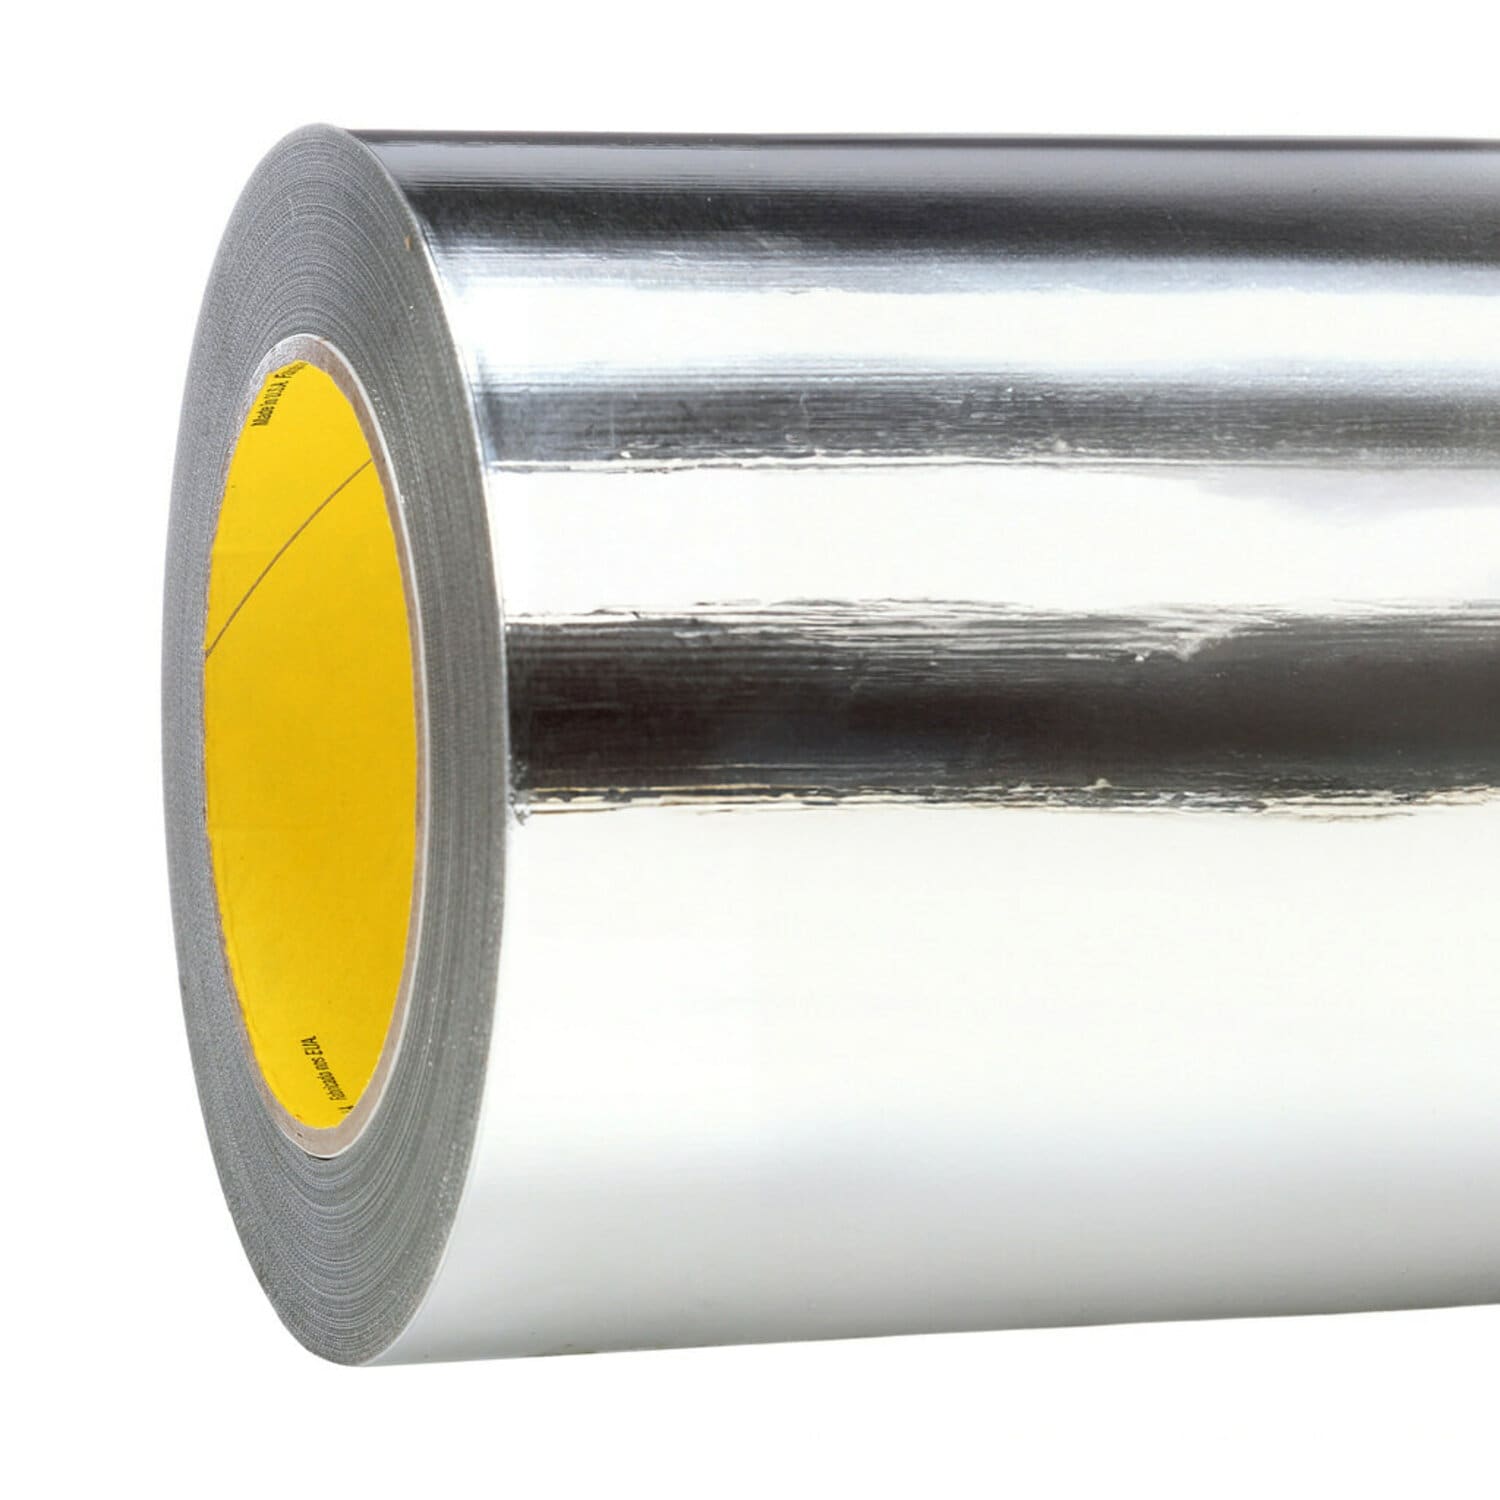 7000001220 - 3M High Temperature Aluminum Foil Glass Cloth Tape 363, Silver, 18 in x
36 yd, 7.3 mil, 1 roll per case